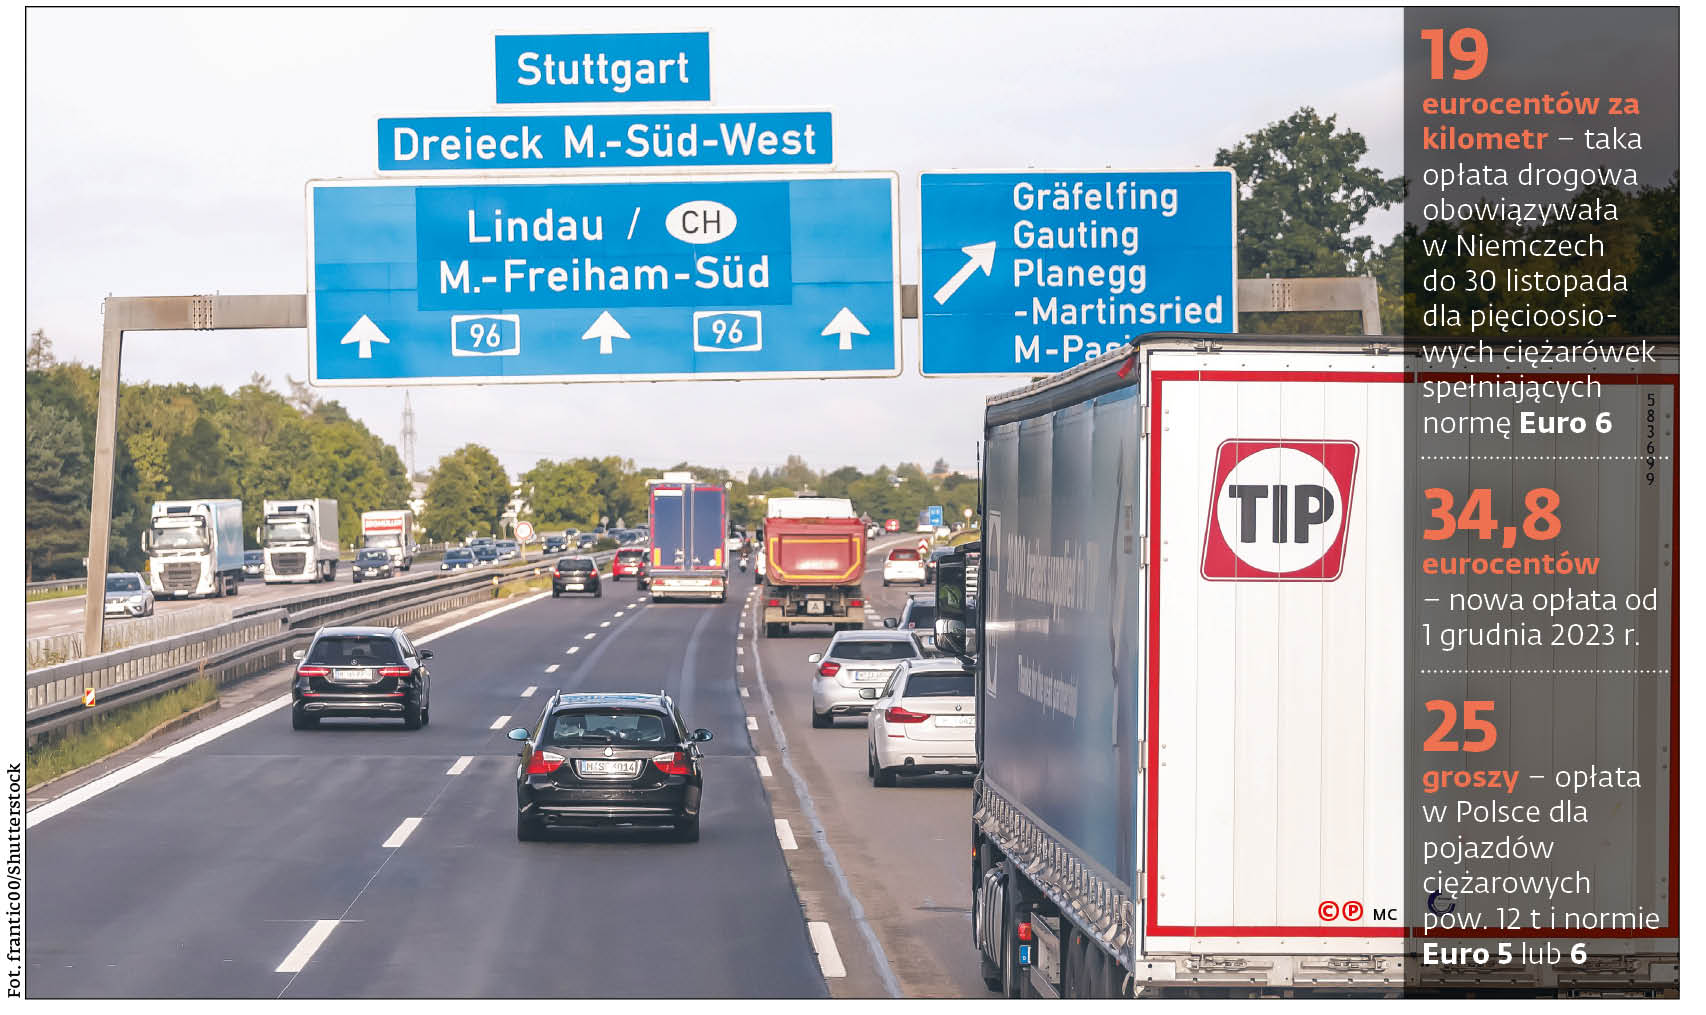 19 eurocentów - taka opłata drogowa obowiązywała  w Niemczech do 30 listopada dla pięcioosiowych ciężarówek spełniających normę Euro 6